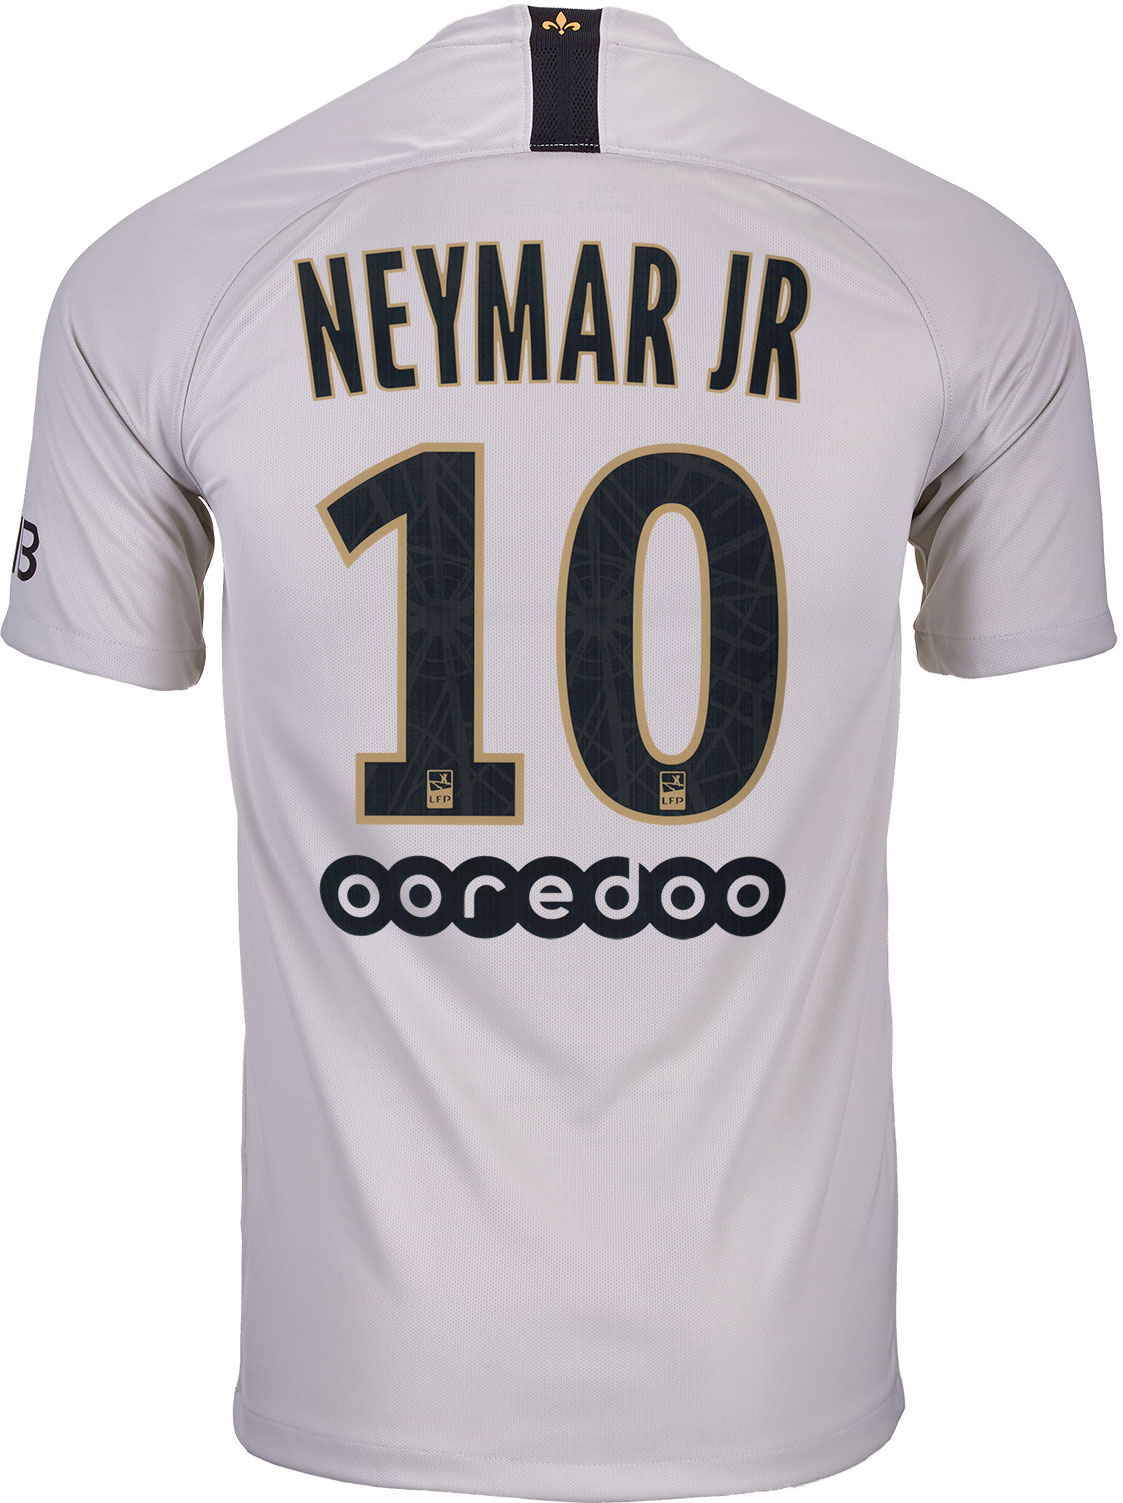 Nike Neymar Jr. PSG Away Jersey  Youth 201819  SoccerPro